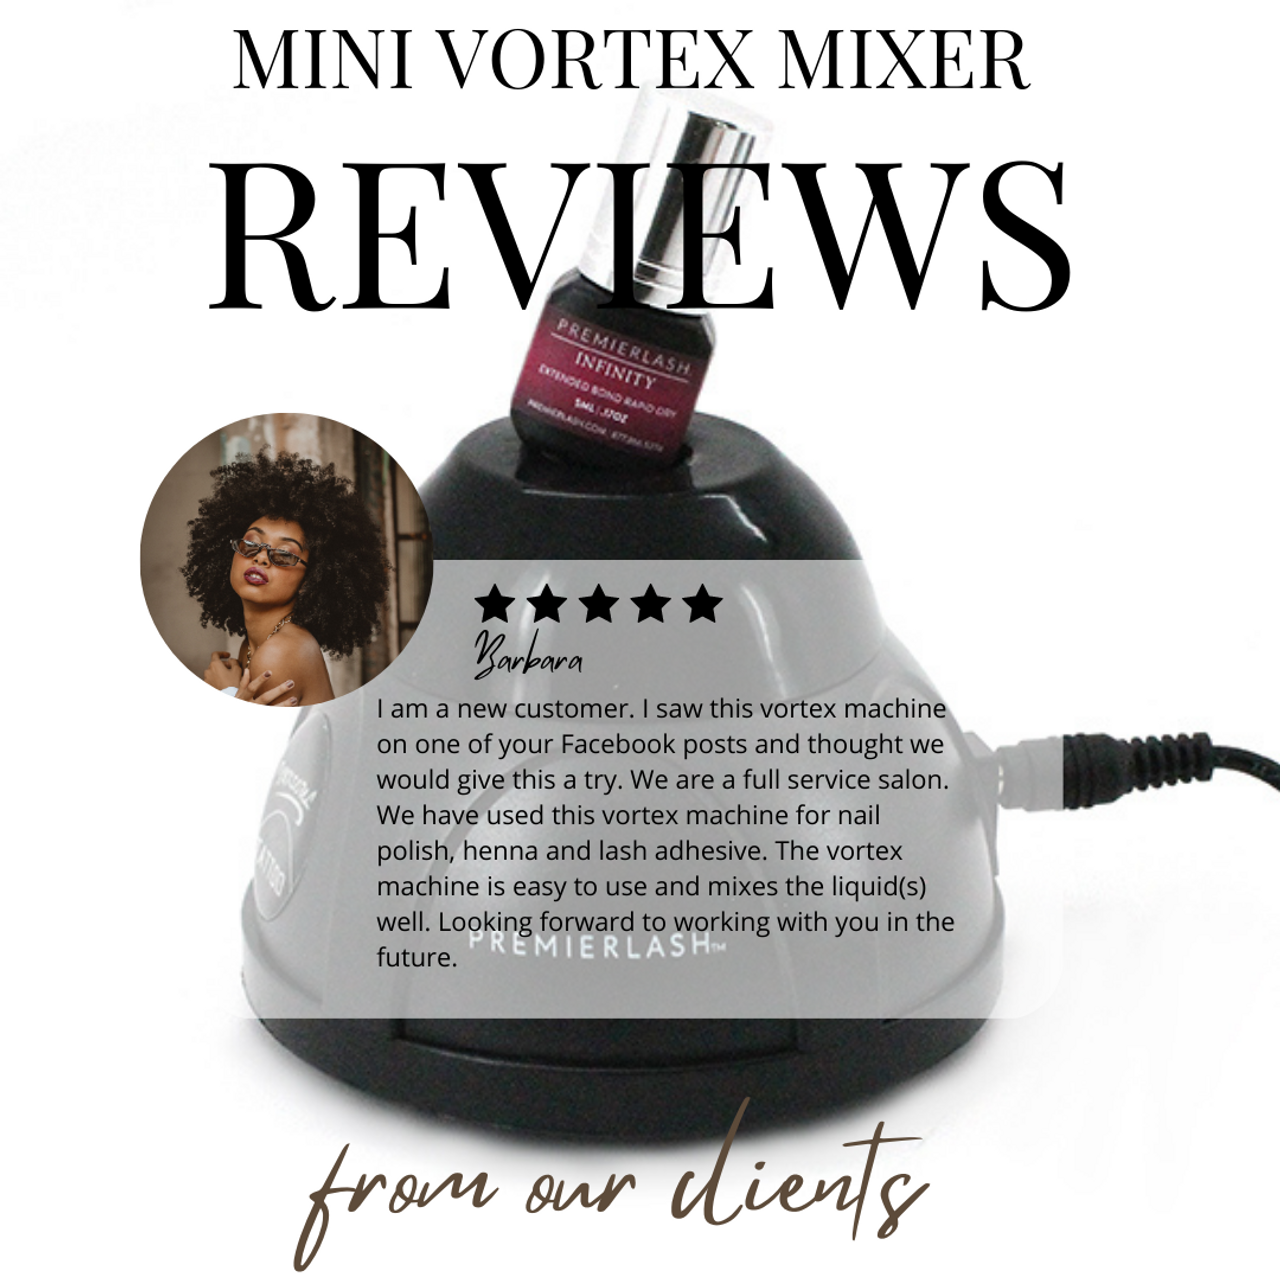 Mini Vortex Mixer